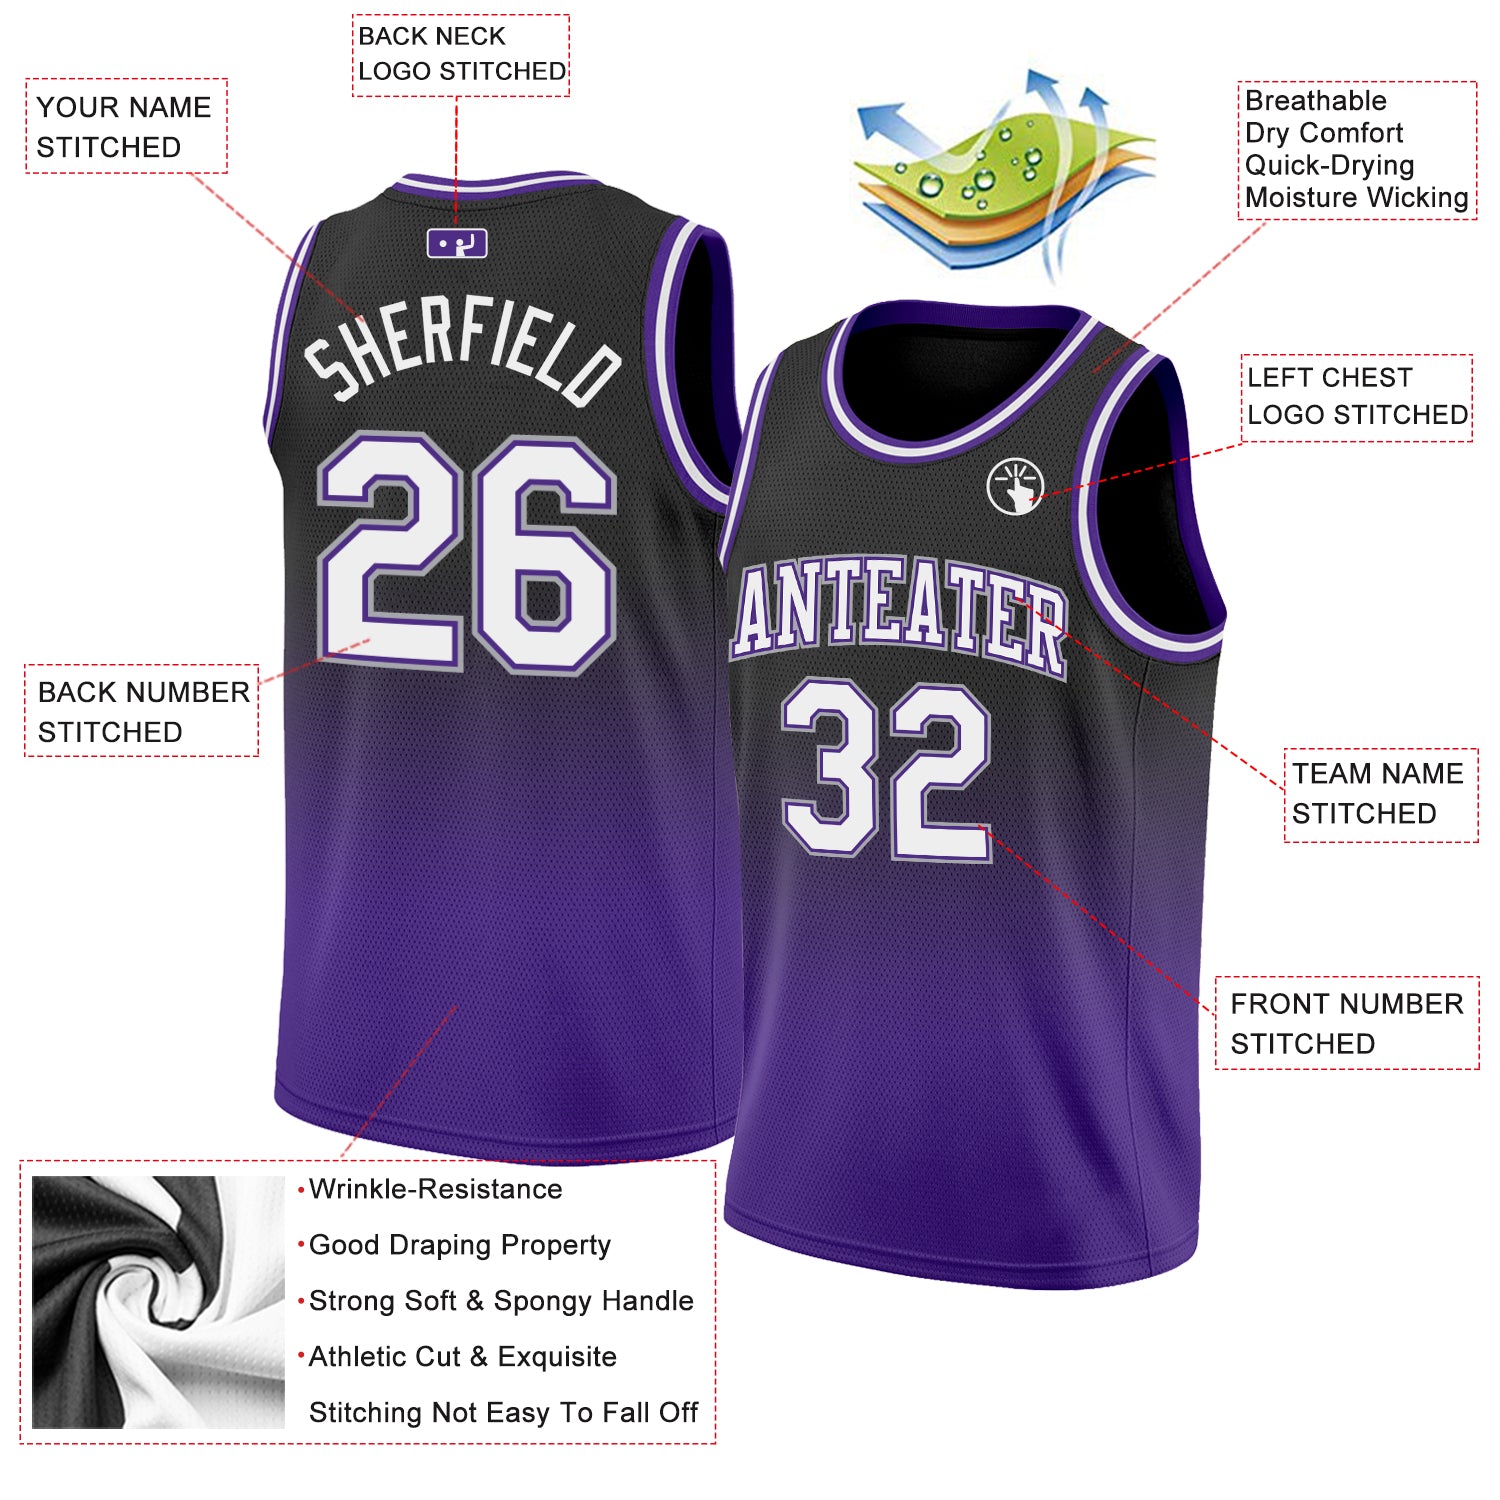 Sacramento Kings Customizable Pro Style Basketball Jersey